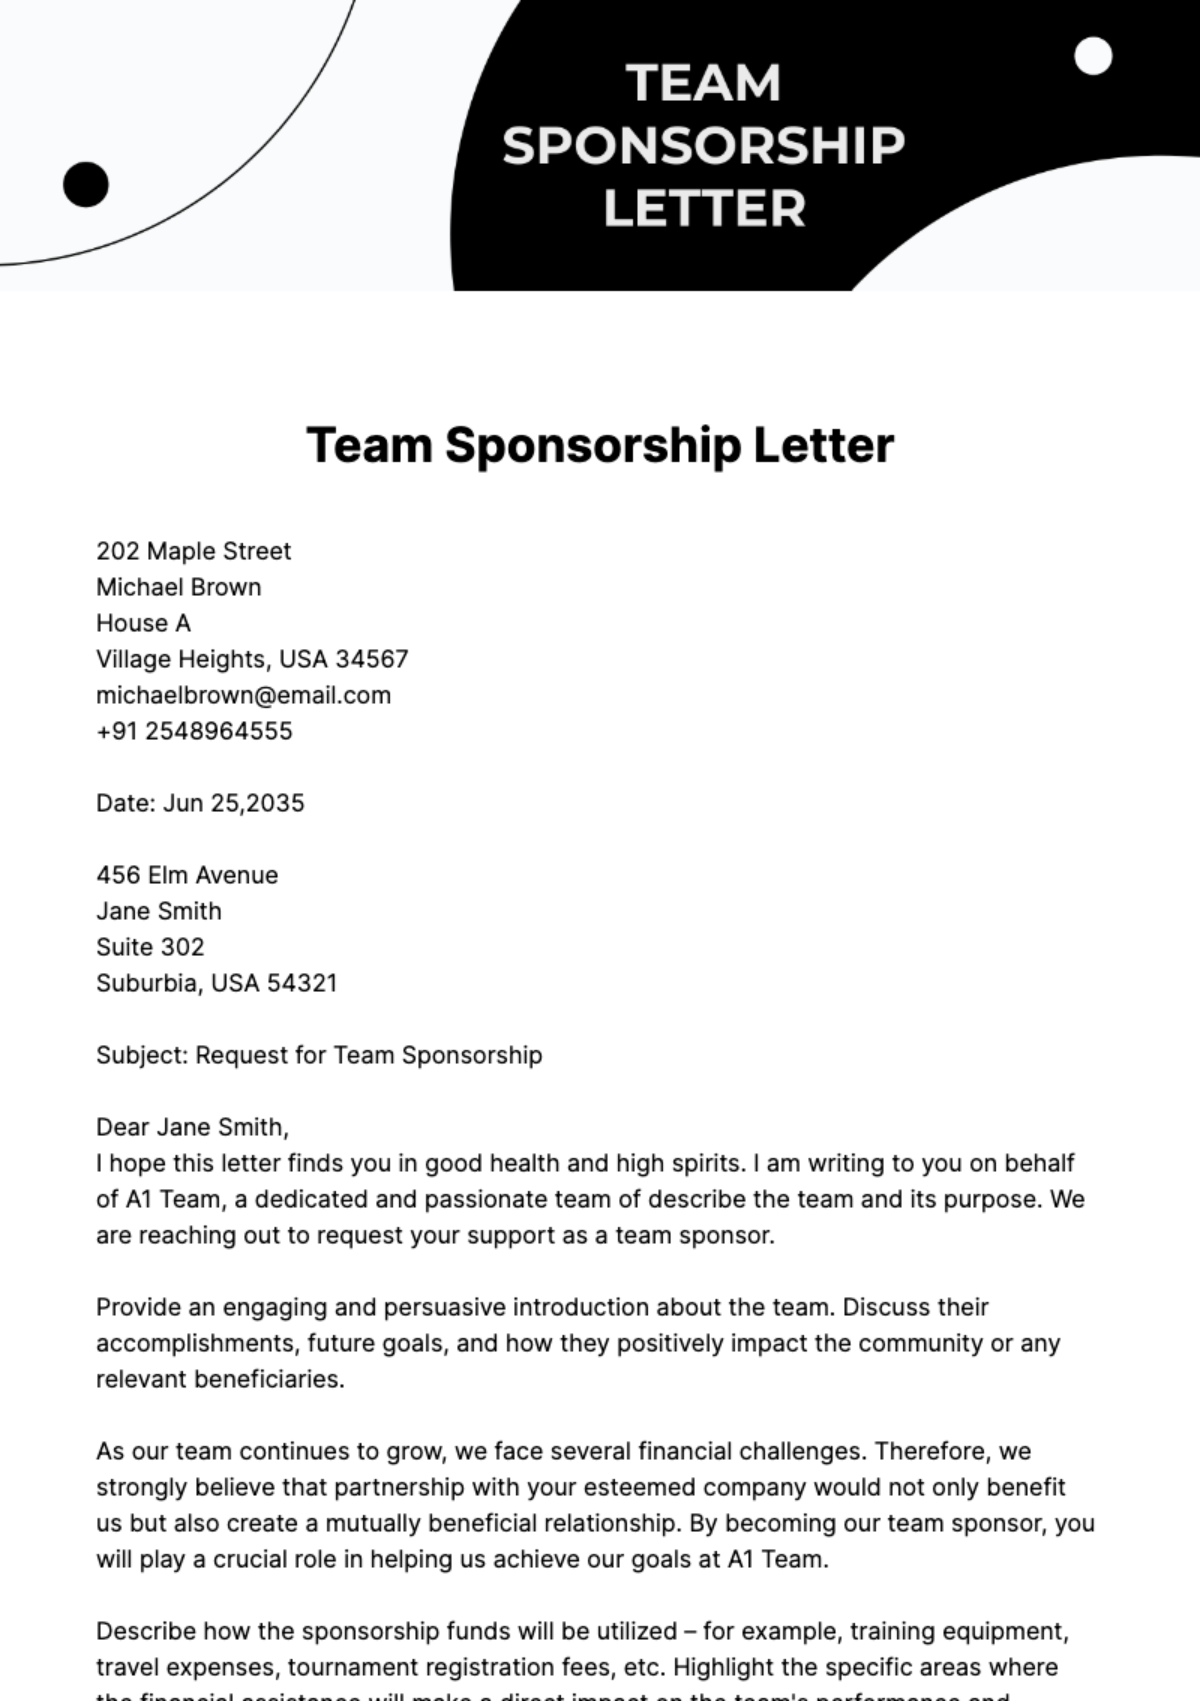 Team Sponsorship Letter Template